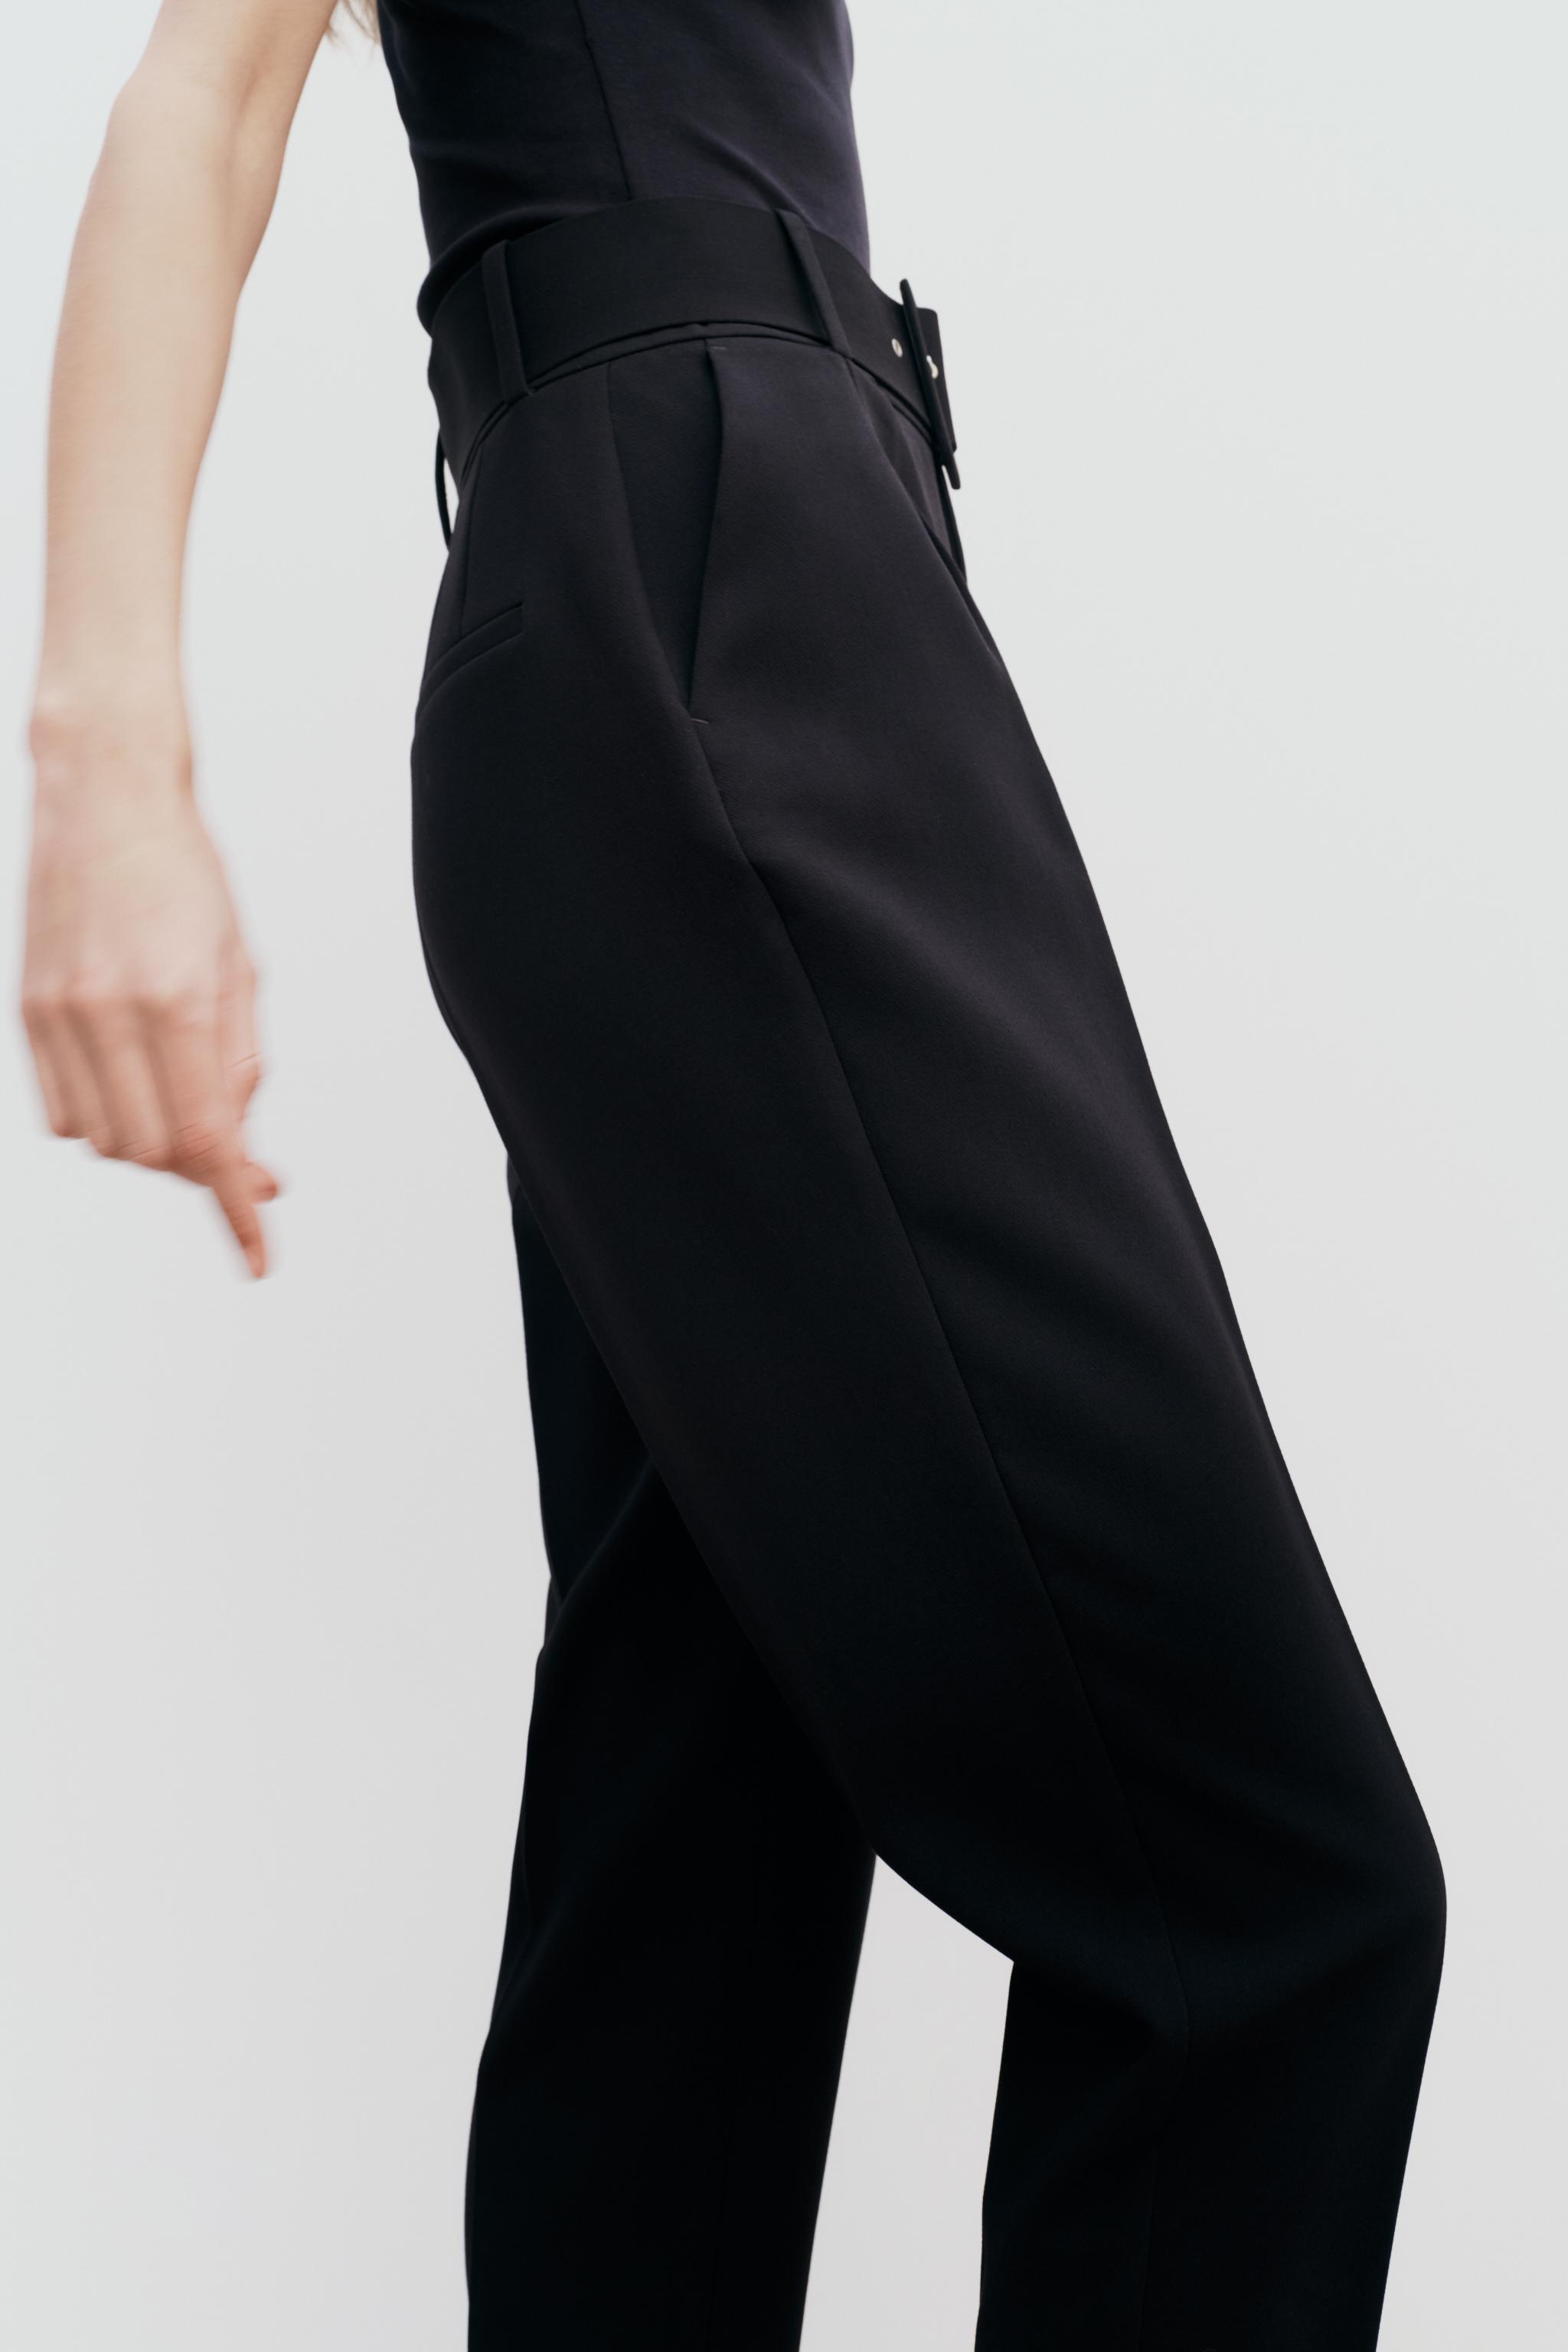 Zara Women Belted Faux Leather Pants Black 4387/063